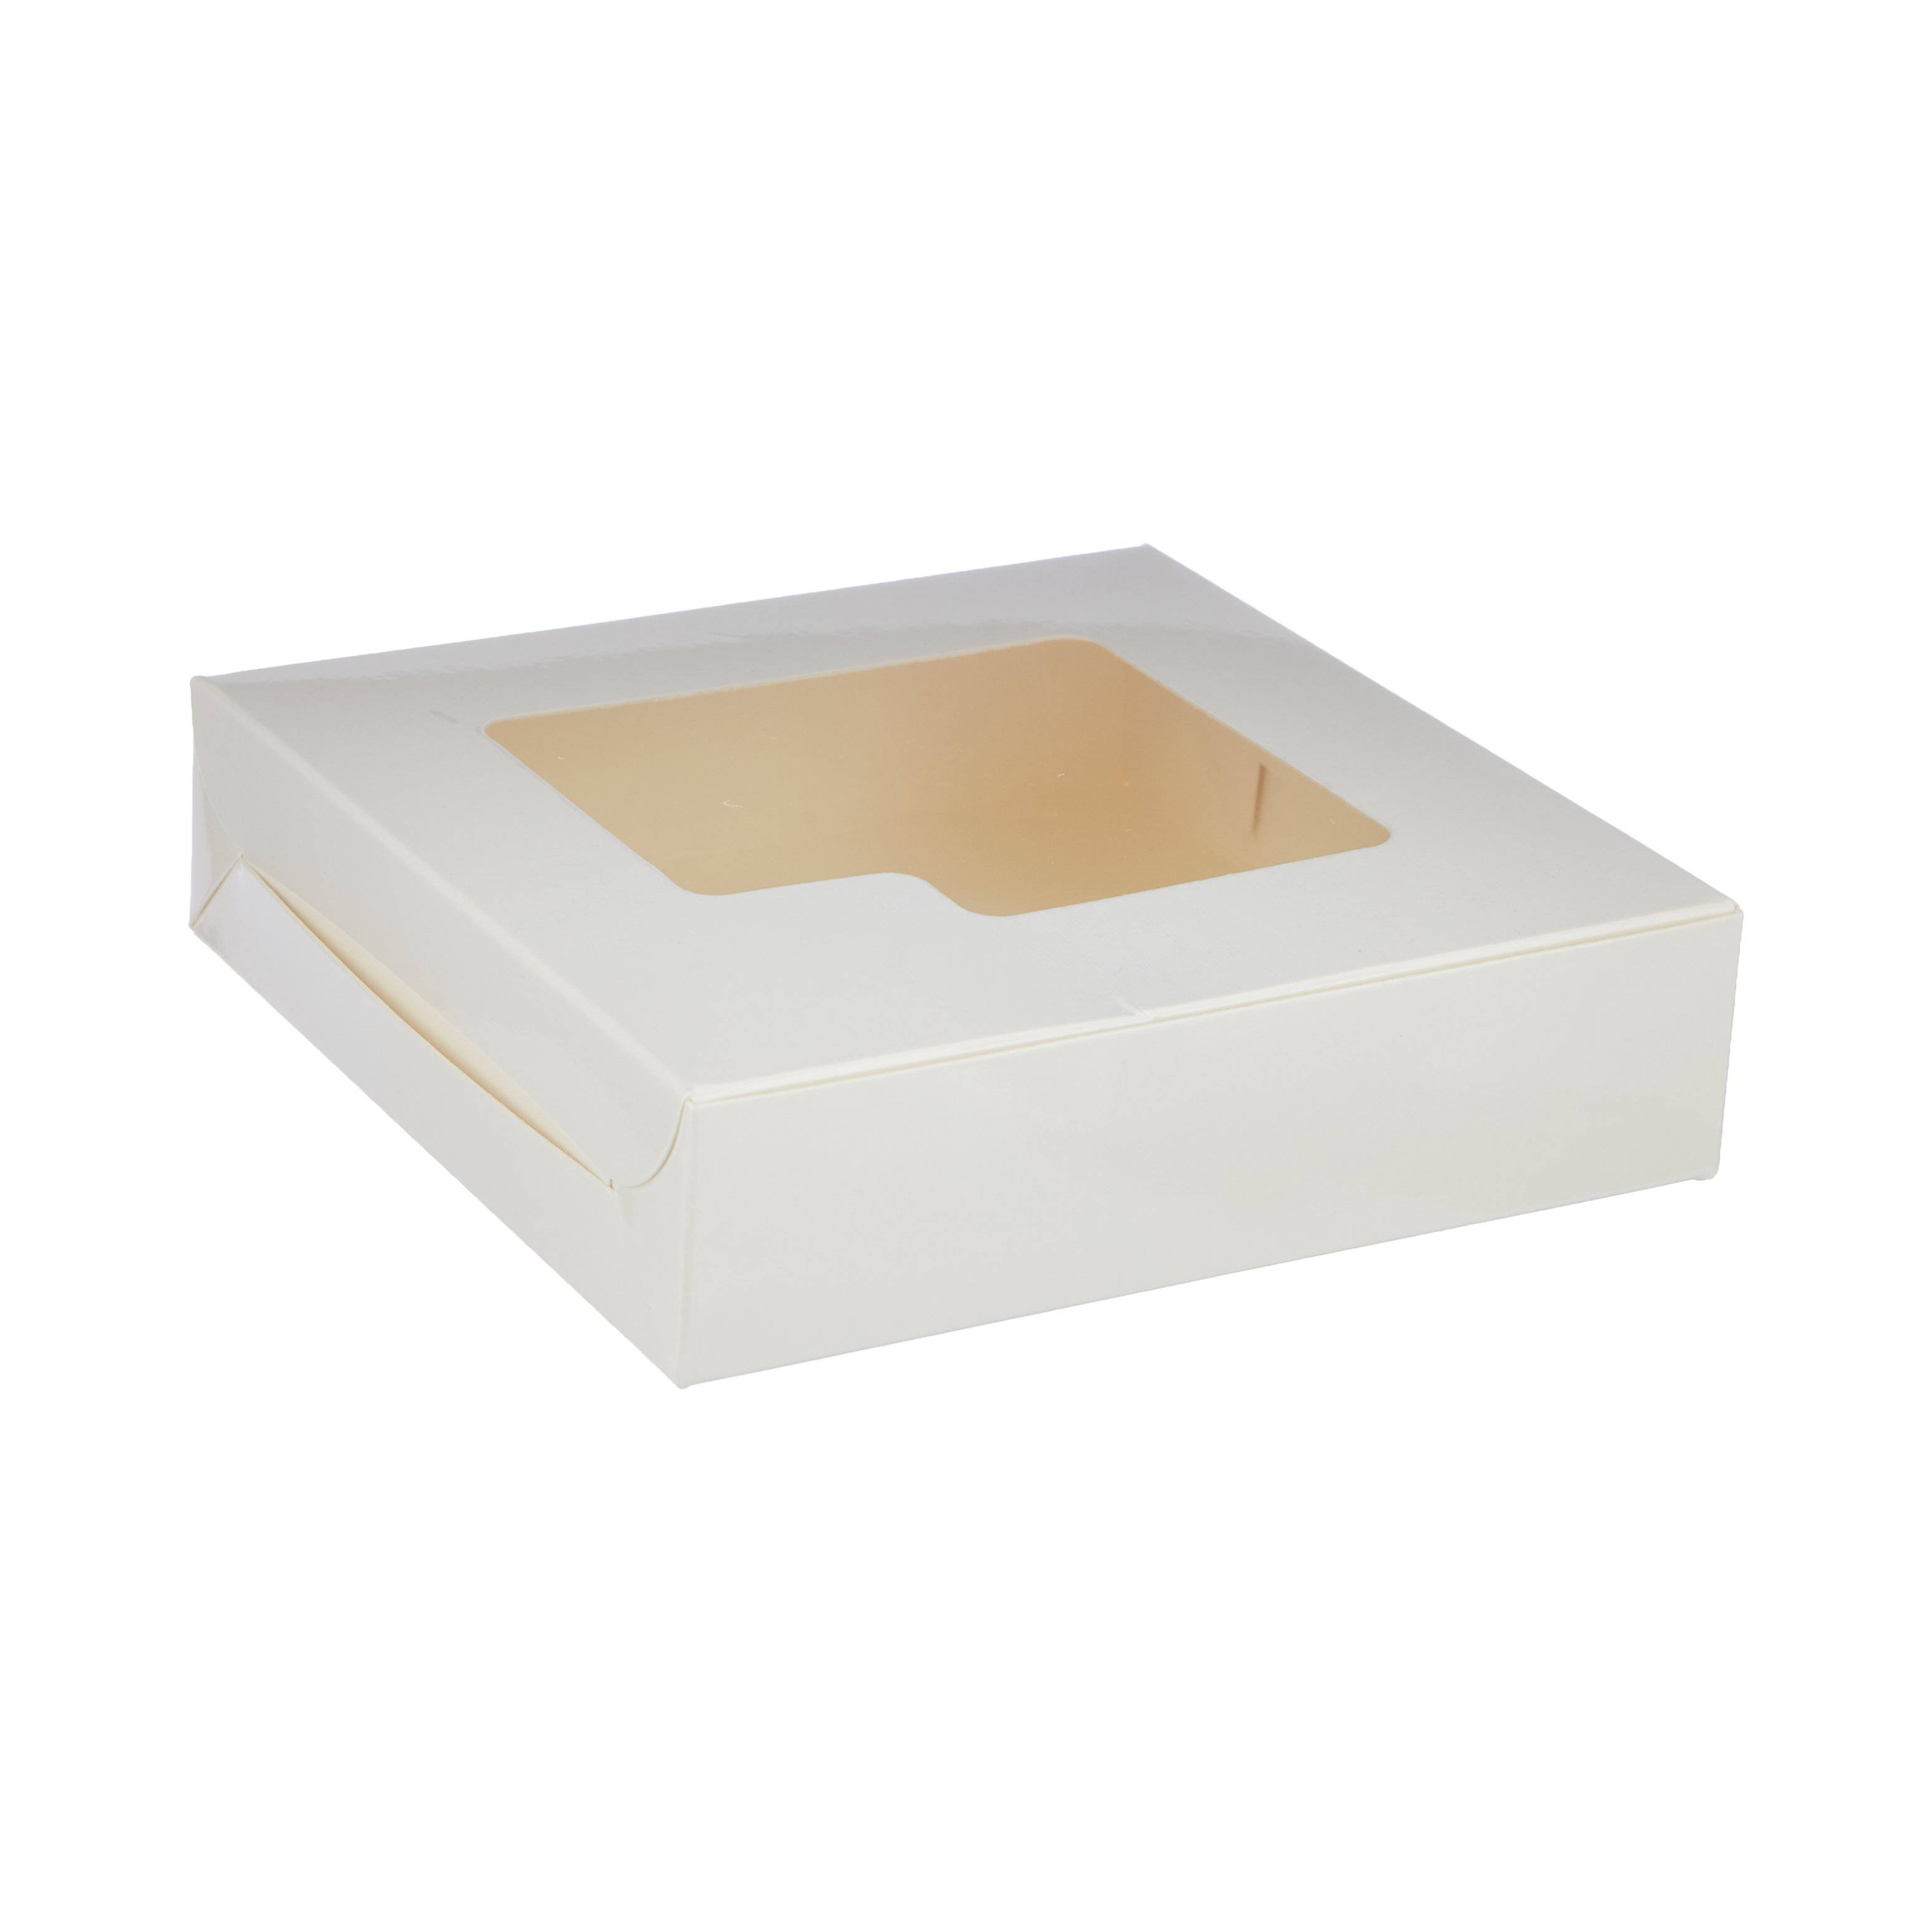 SWEET BOX WHITE 15x15 CM - Hotpack Global